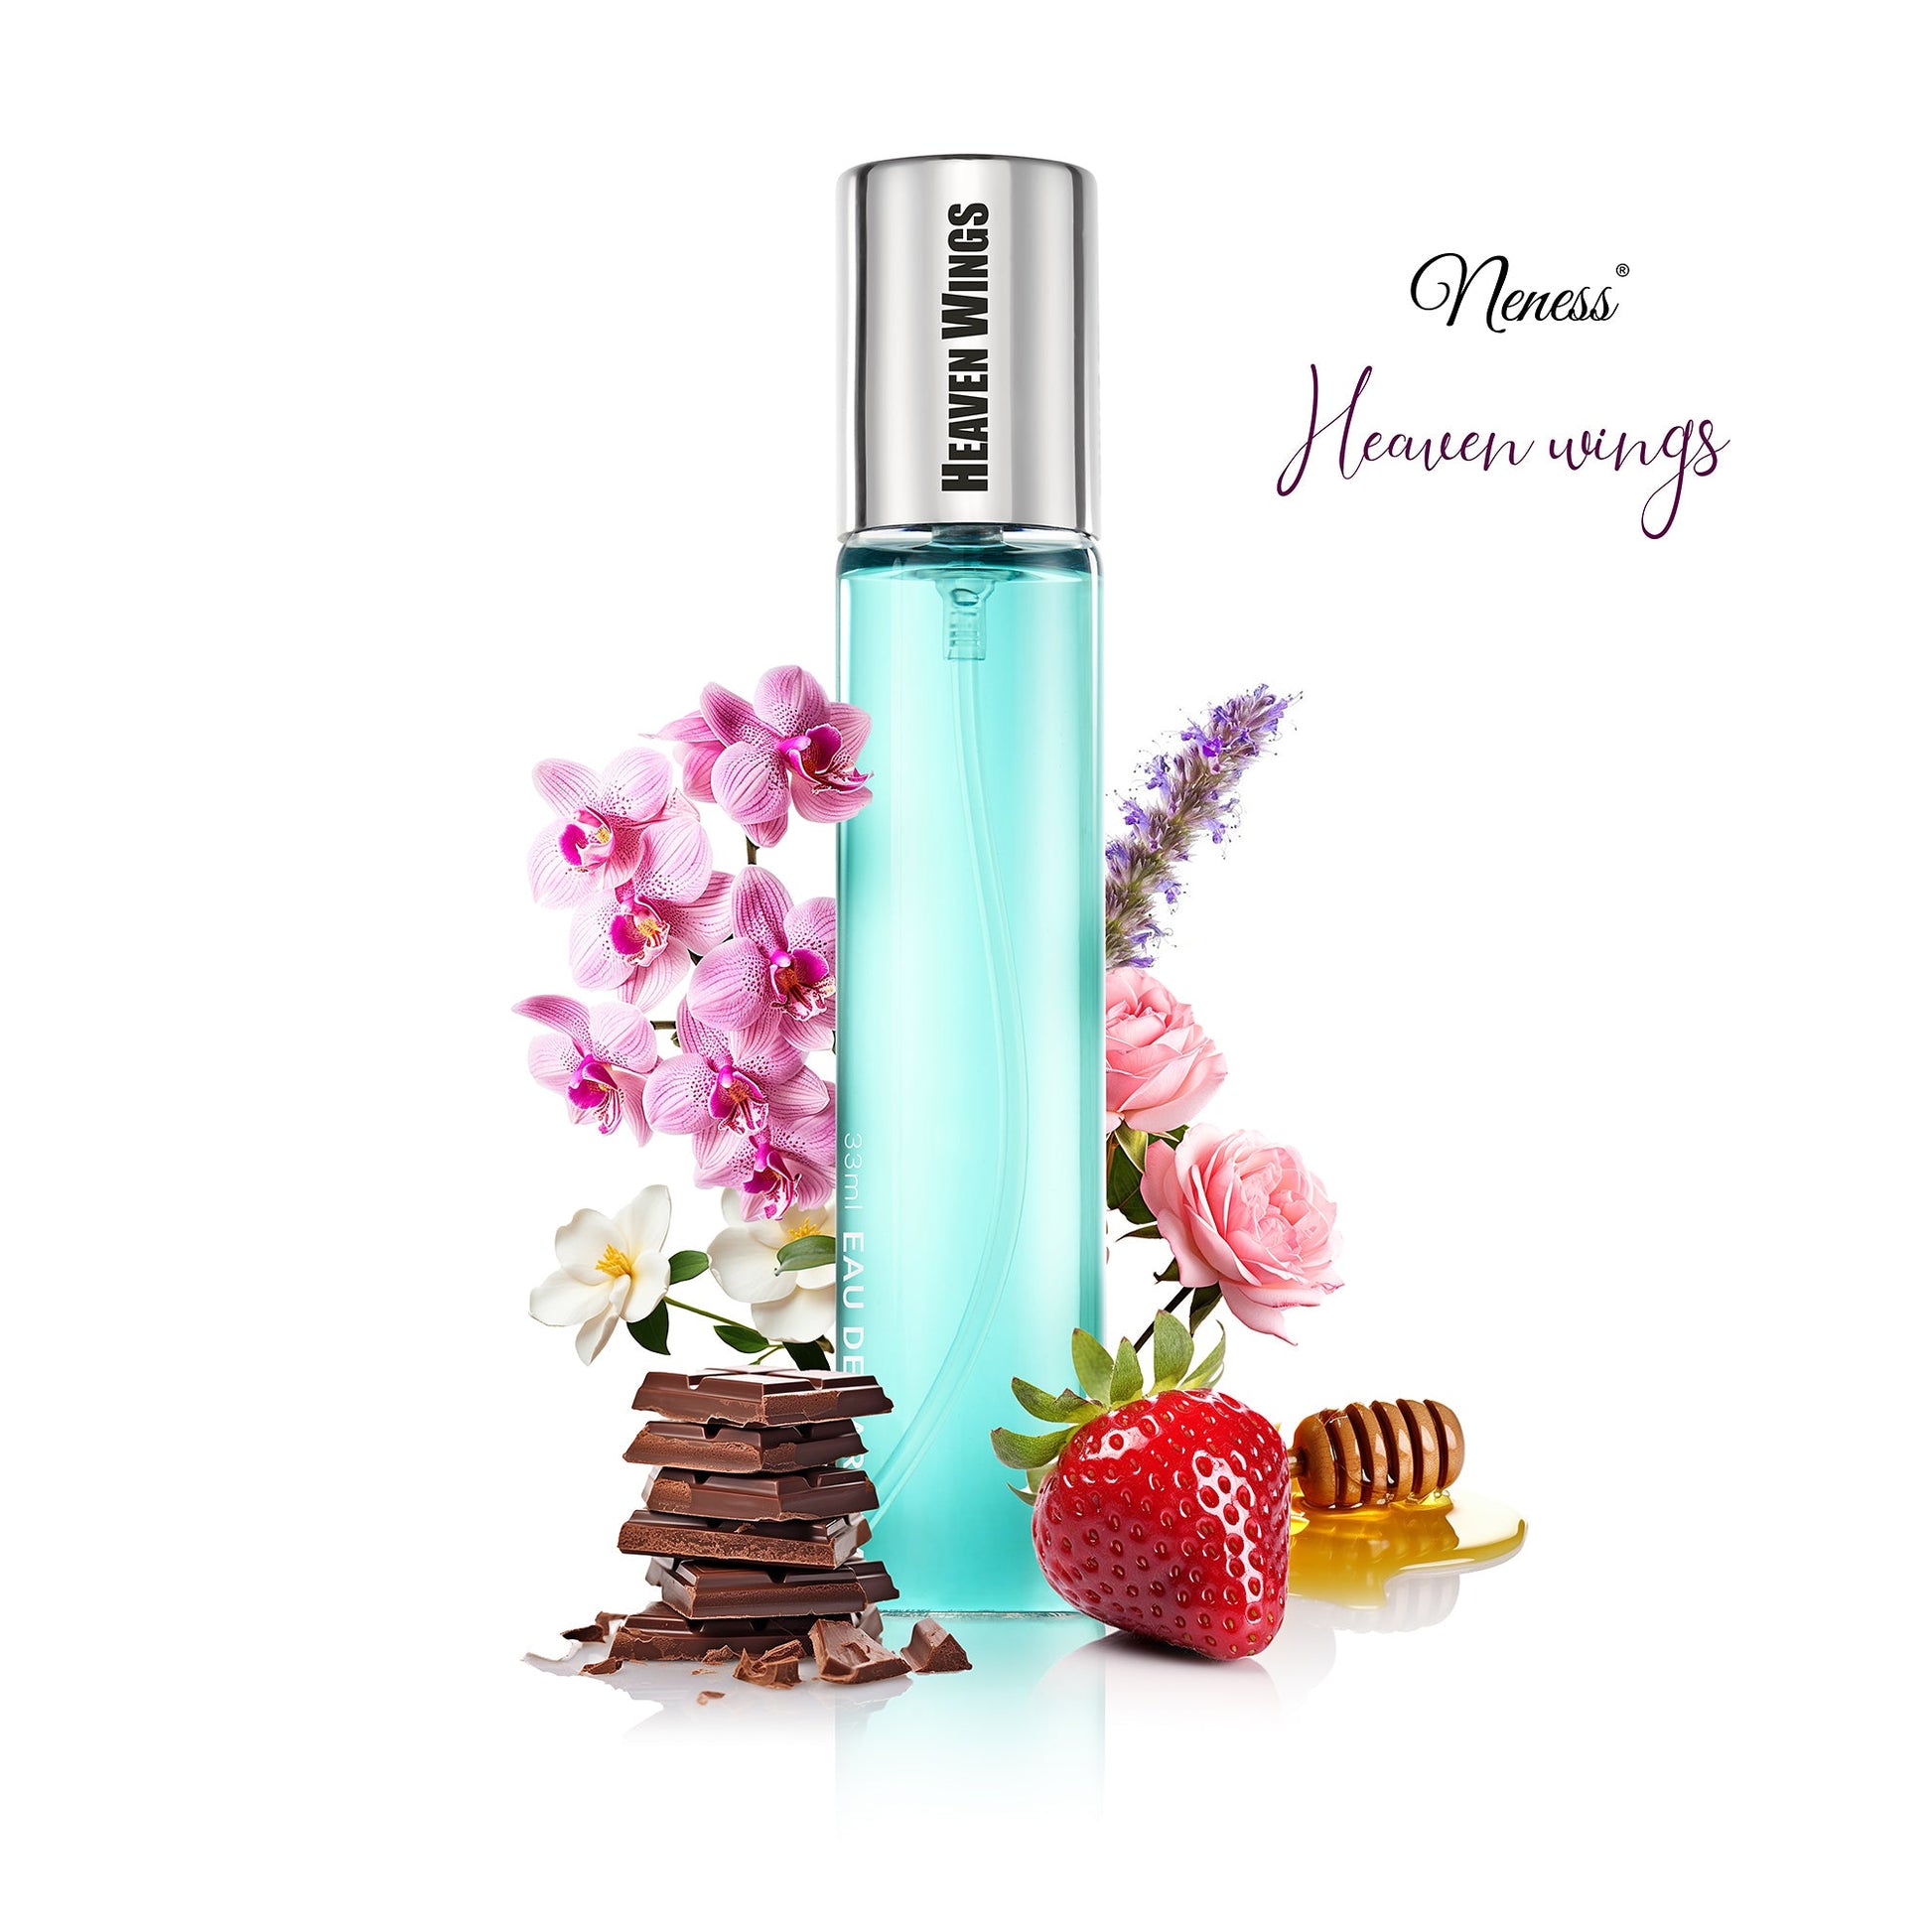 Image of N184. Neness Heaven Wings - 33 ml - Perfume For Women